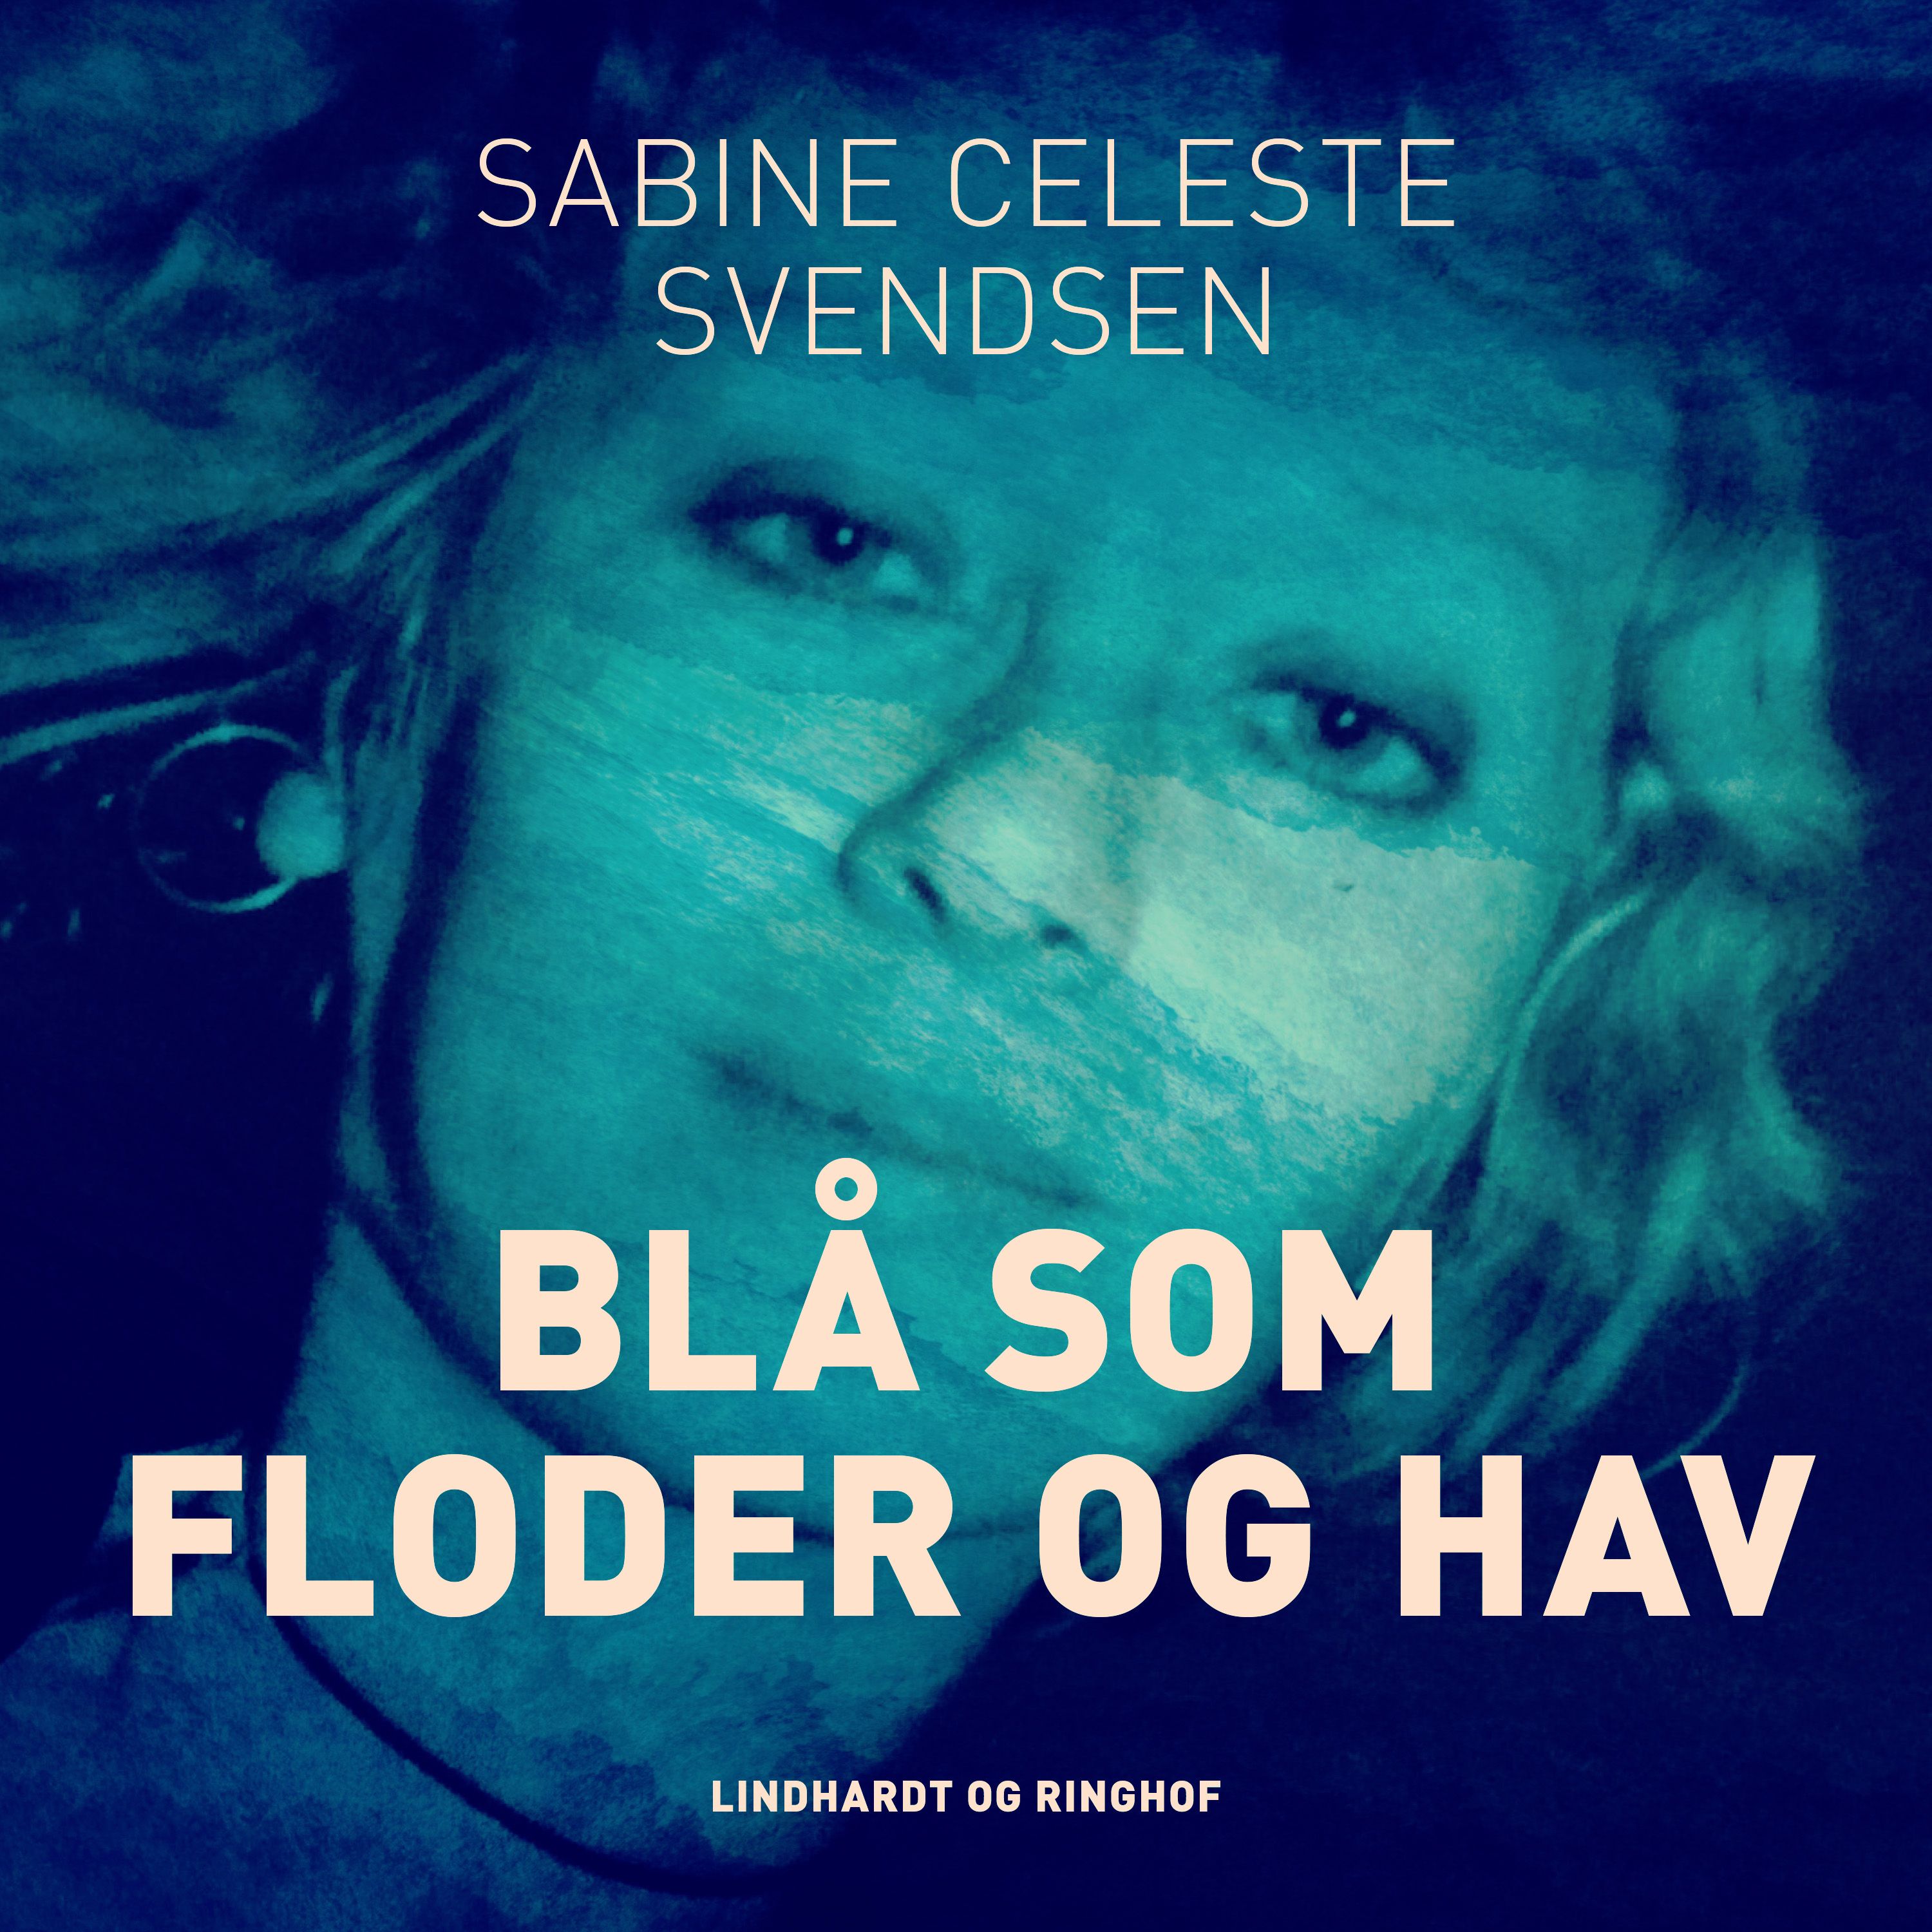 Blå som floder og hav, ljudbok av Sabine Celeste Svendsen